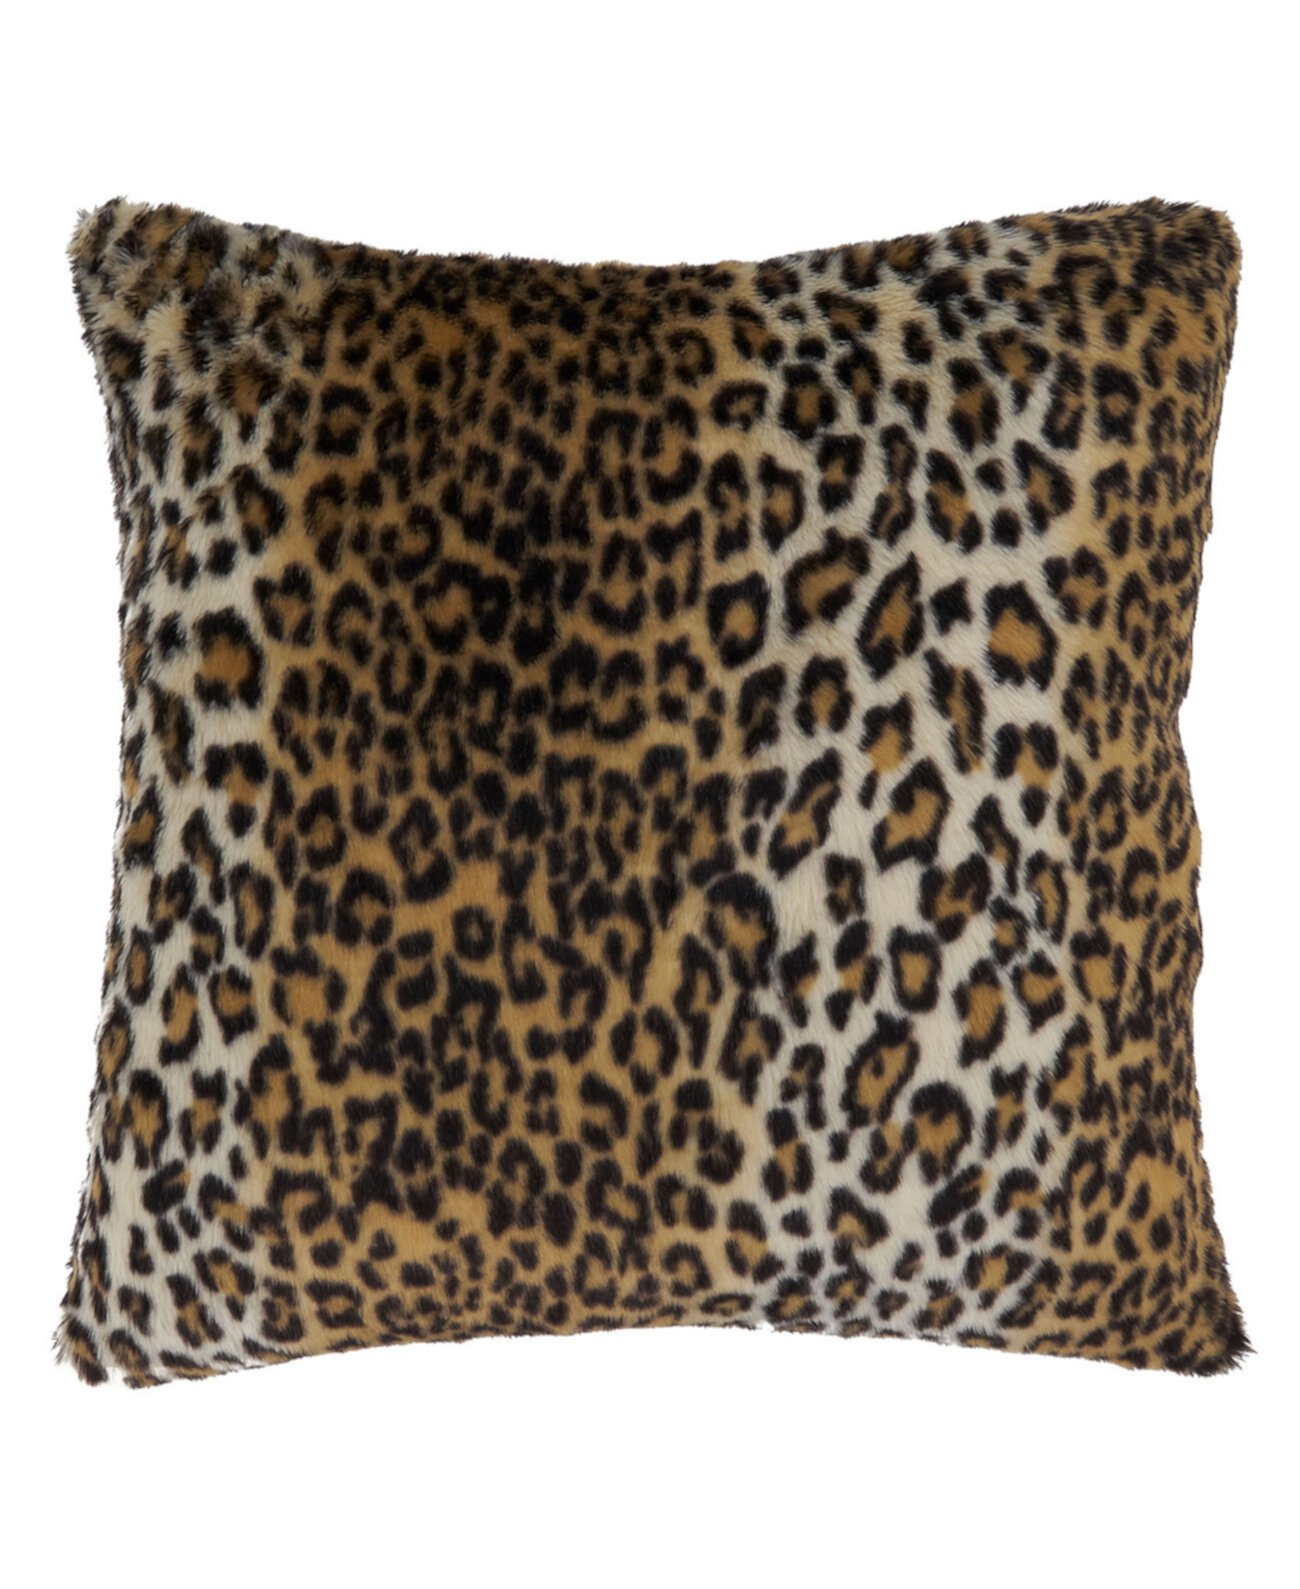 Подушка с принтом гепарда, 22 x 22 дюйма Saro